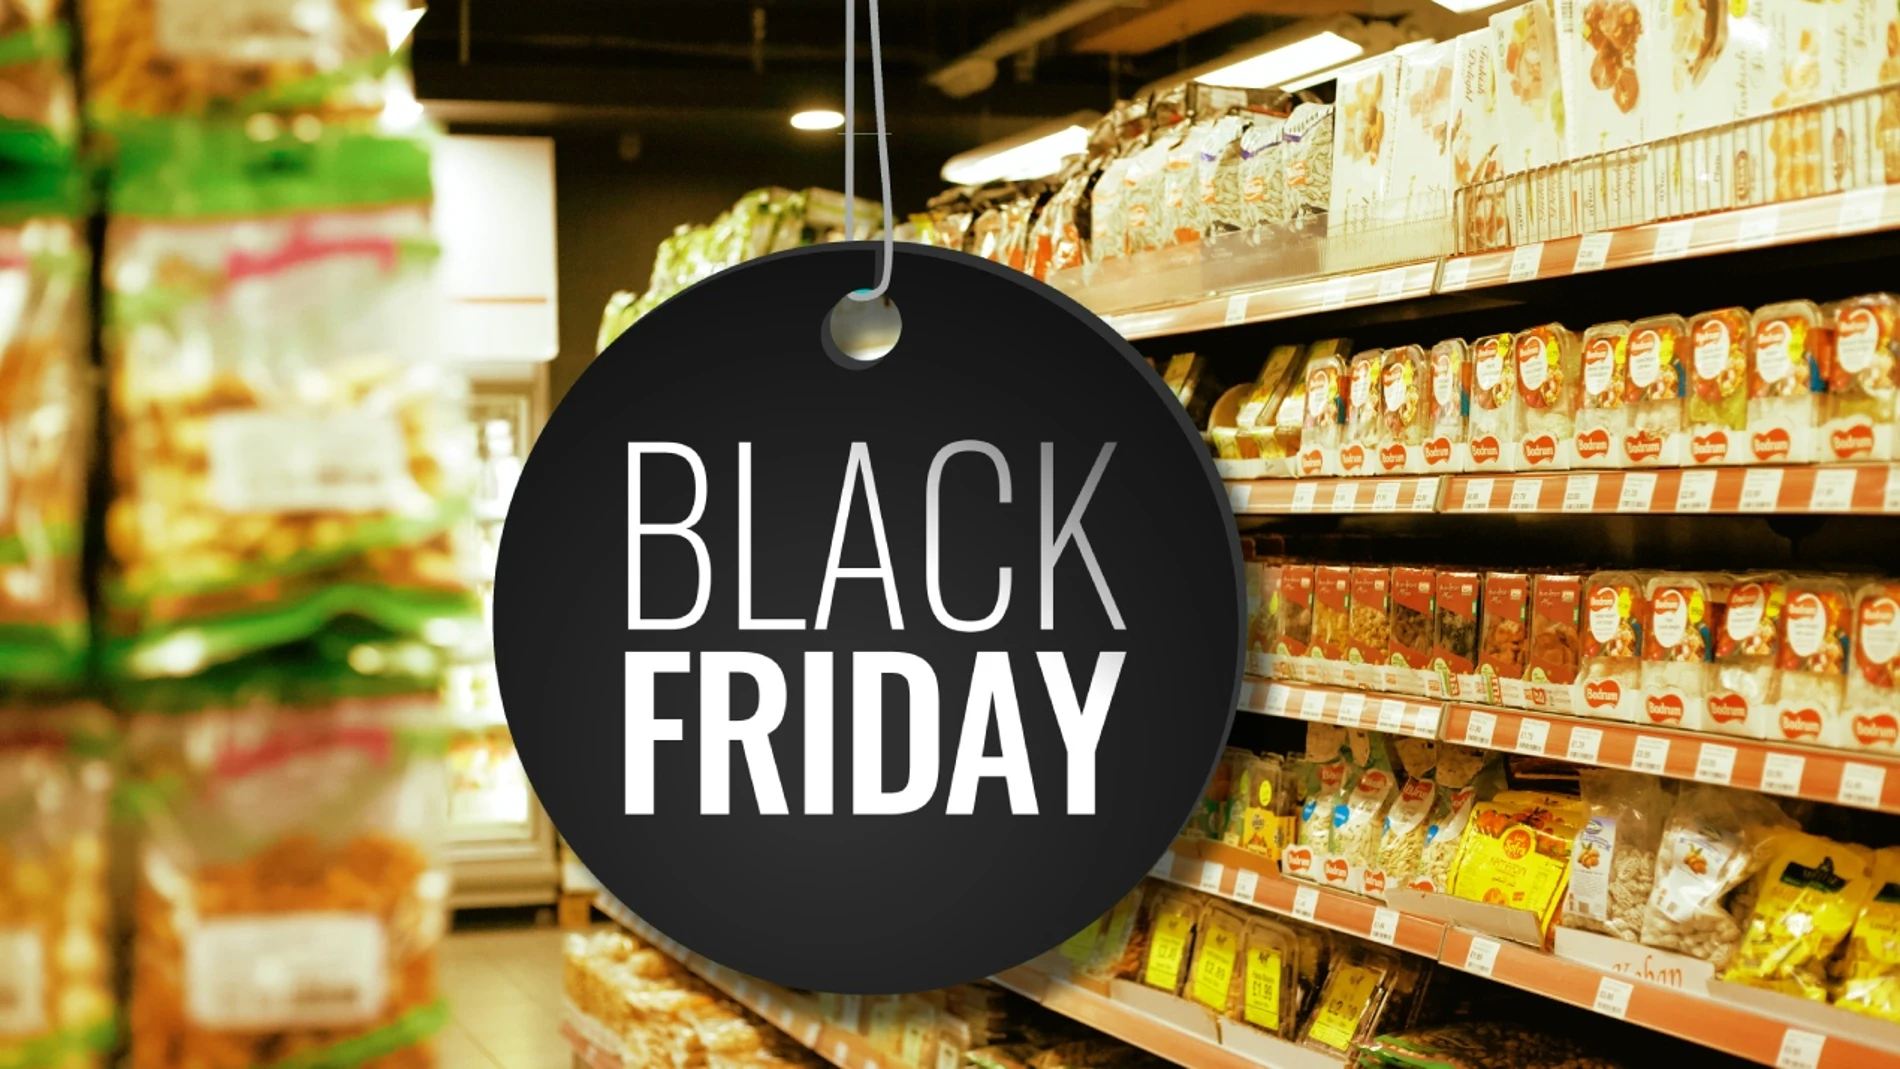 Supermercados con descuentos en el Black Friday 2021: Mercadona, Lidl, Carrefour, El Corte Inglés y Dia